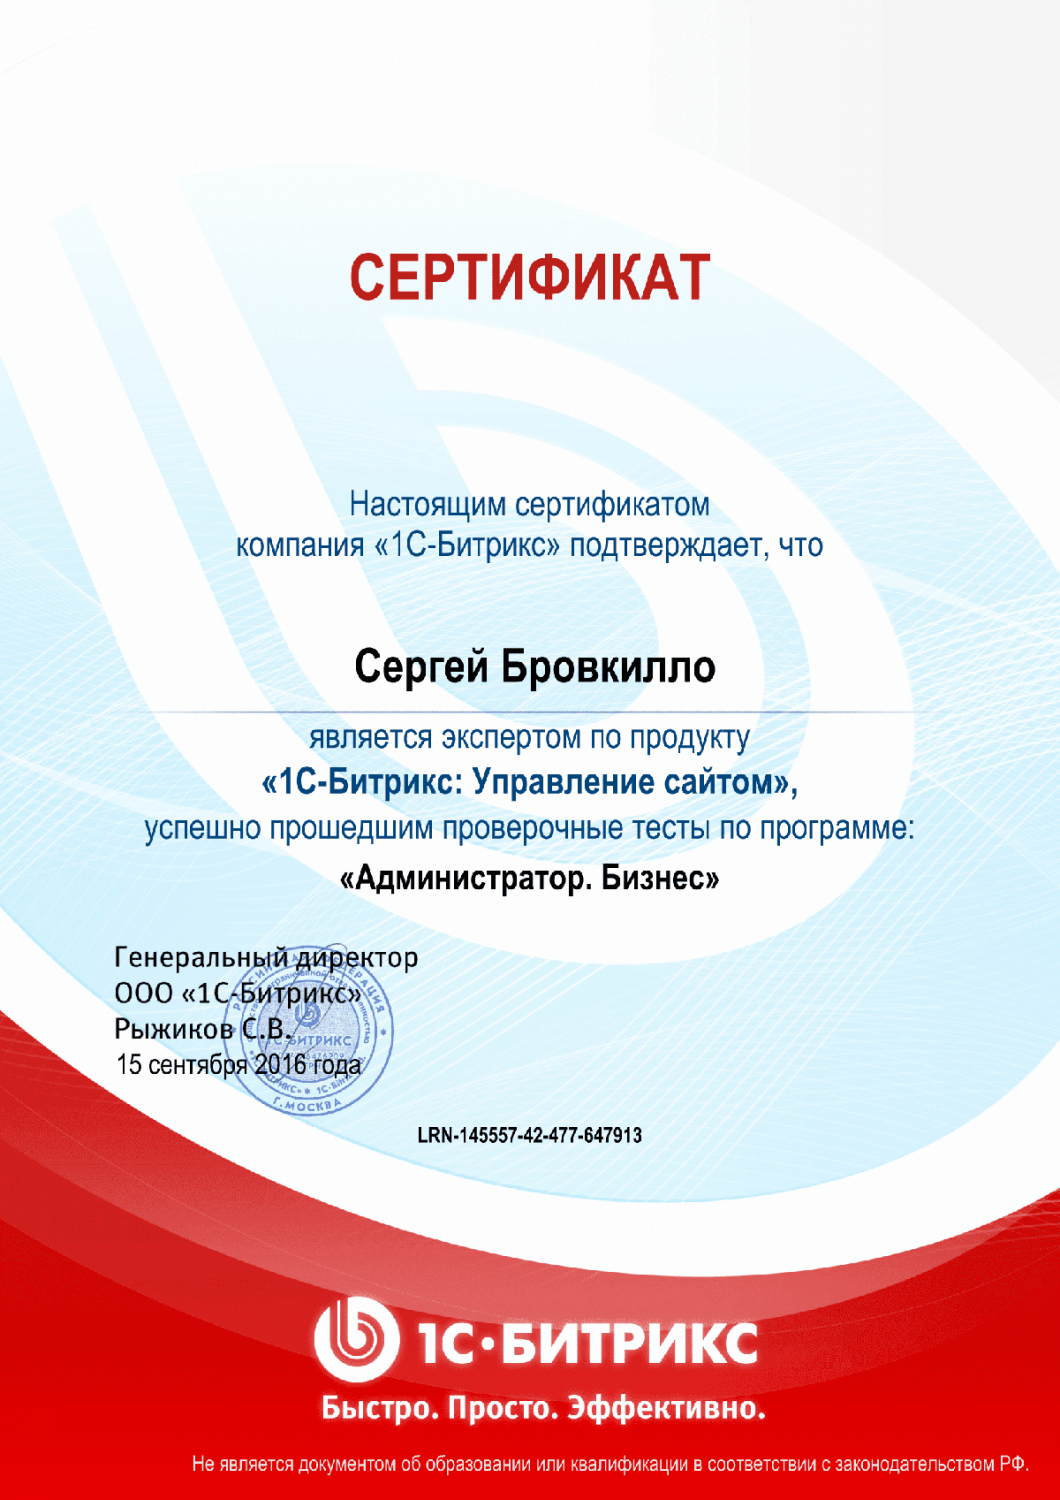 Сертификат эксперта по программе "Администратор. Бизнес" в Петрозаводска